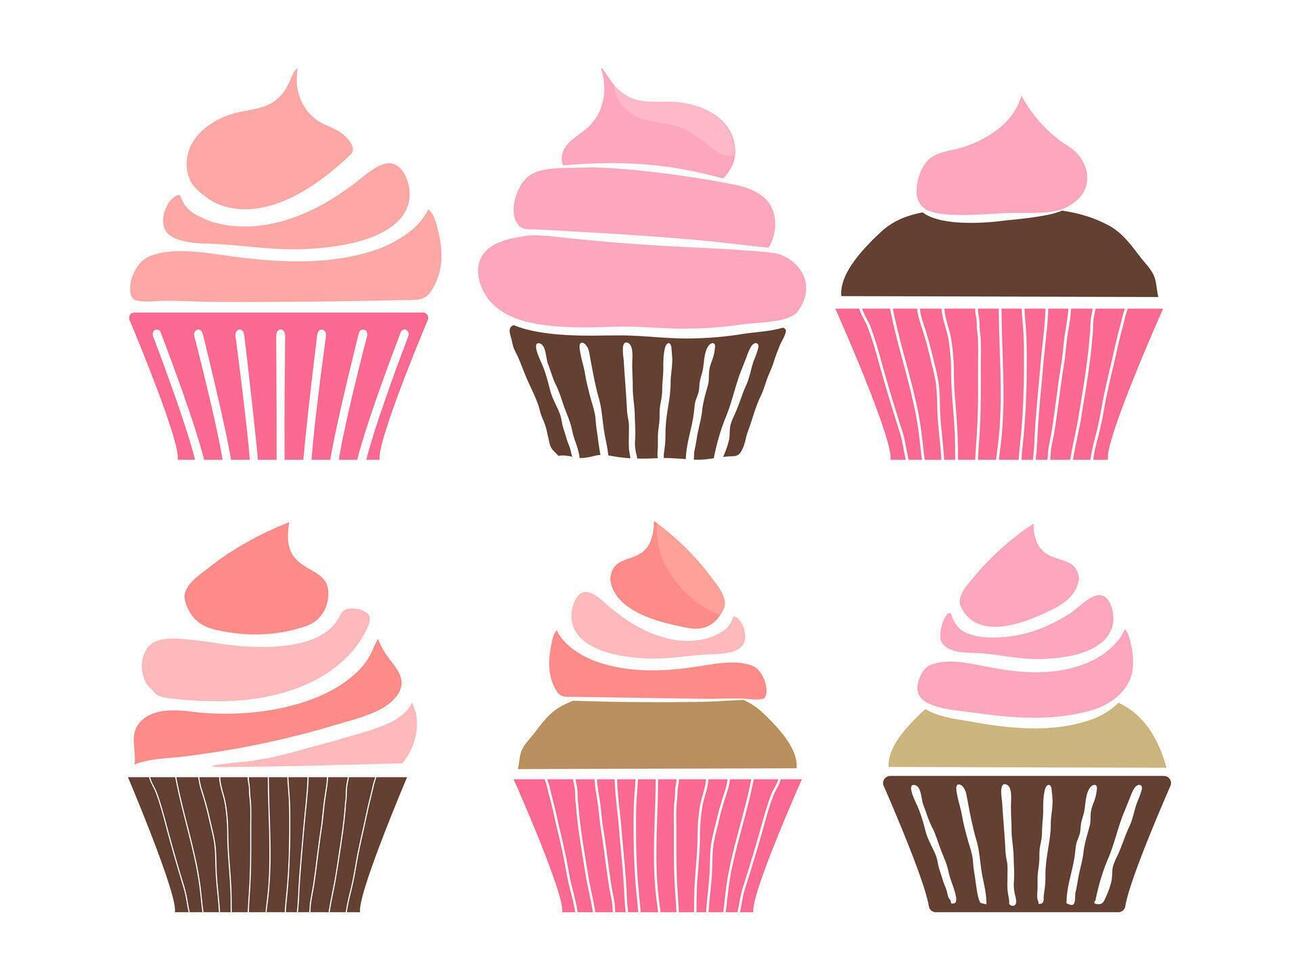 rose petit gâteau illustration ensemble ou muffin icône pour boulangerie vecteur